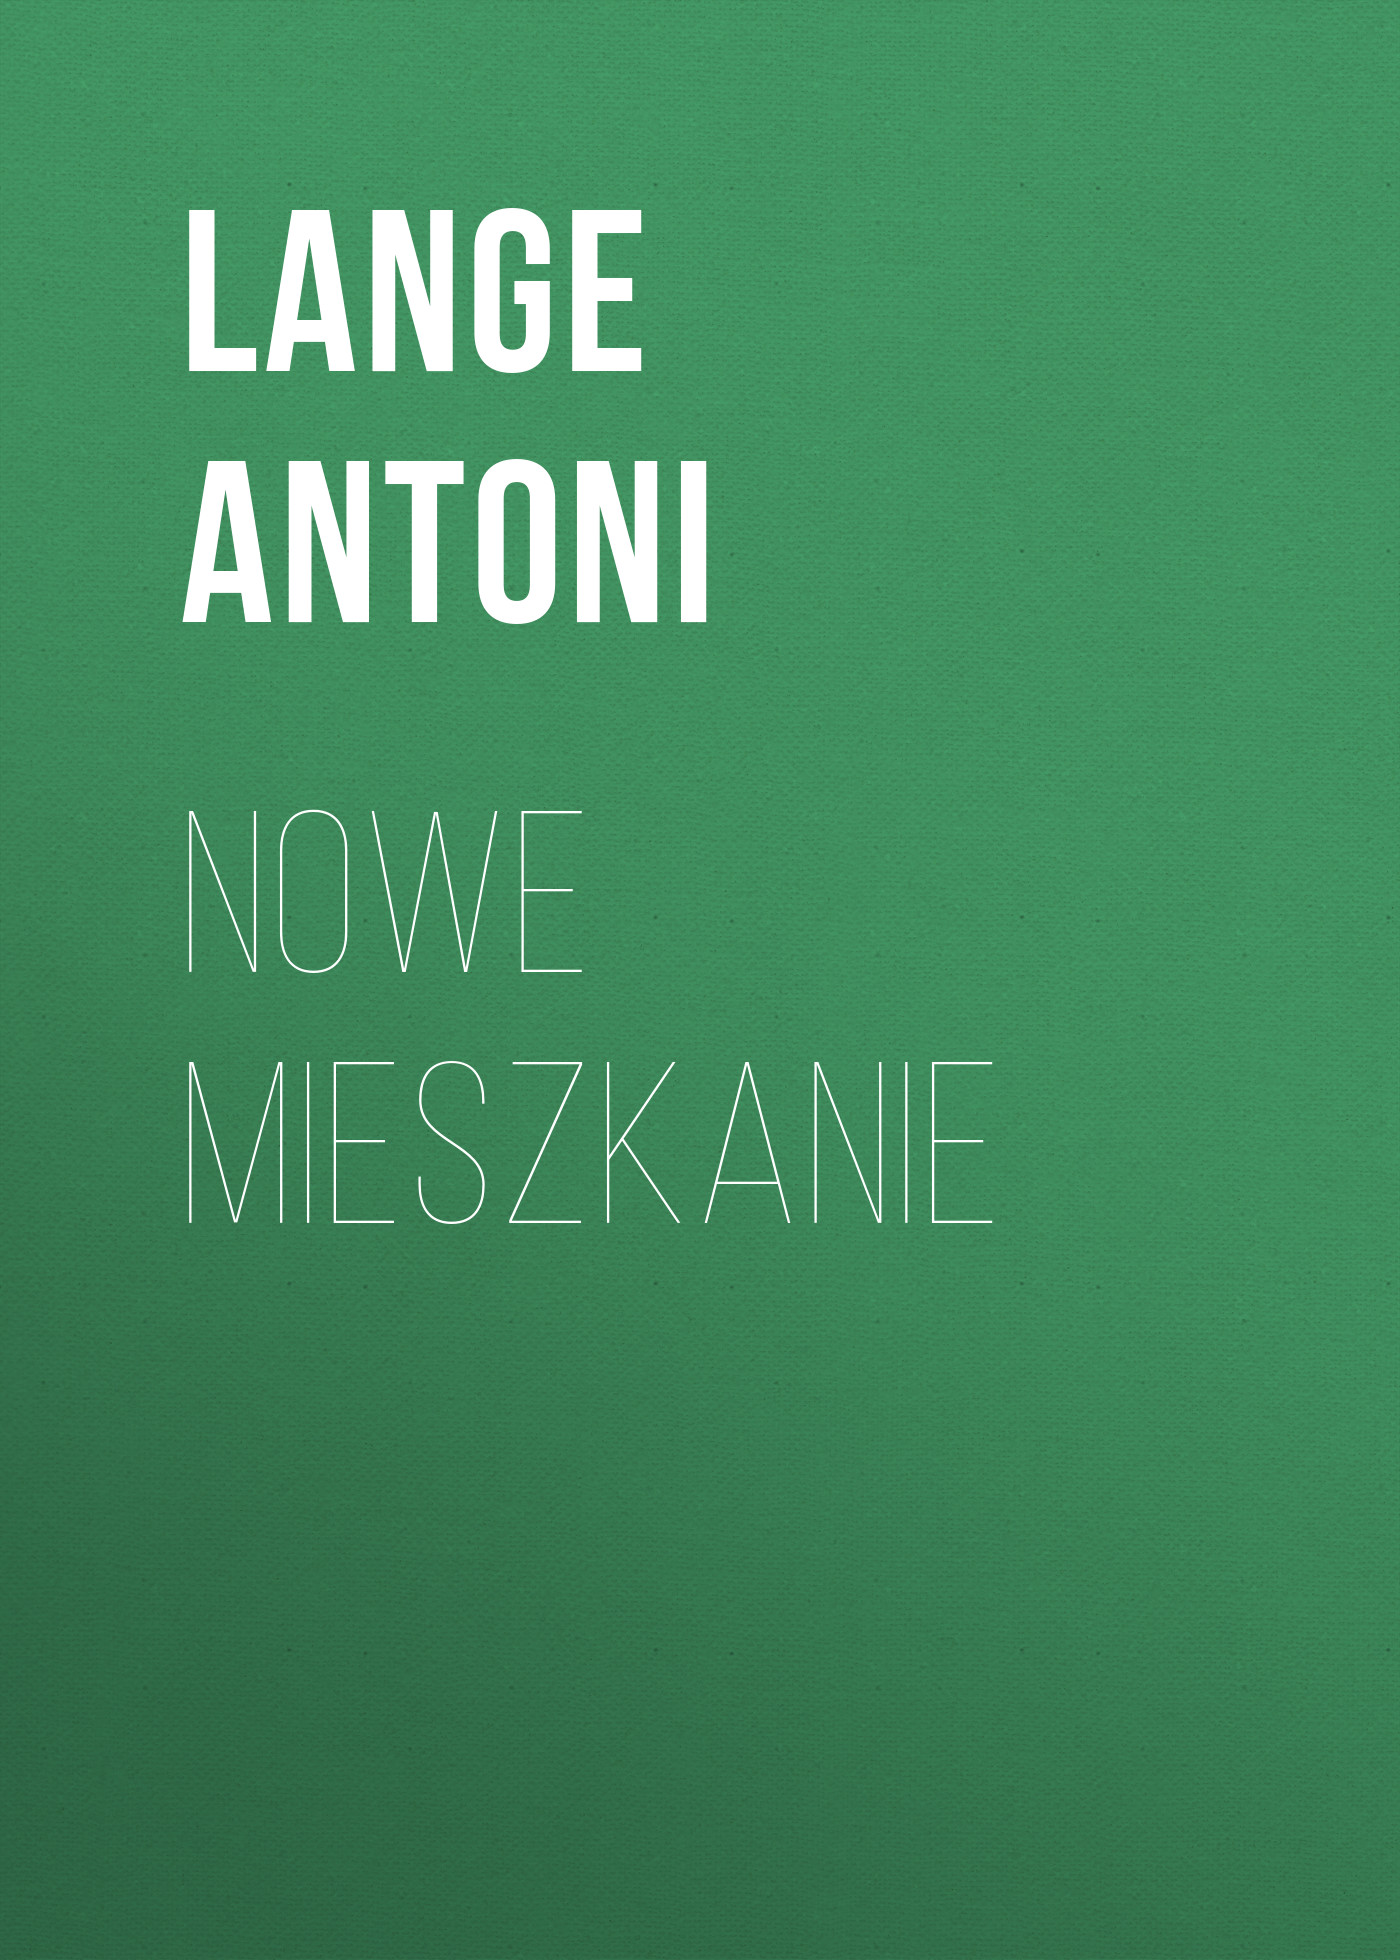 Скачать Nowe mieszkanie - Lange Antoni